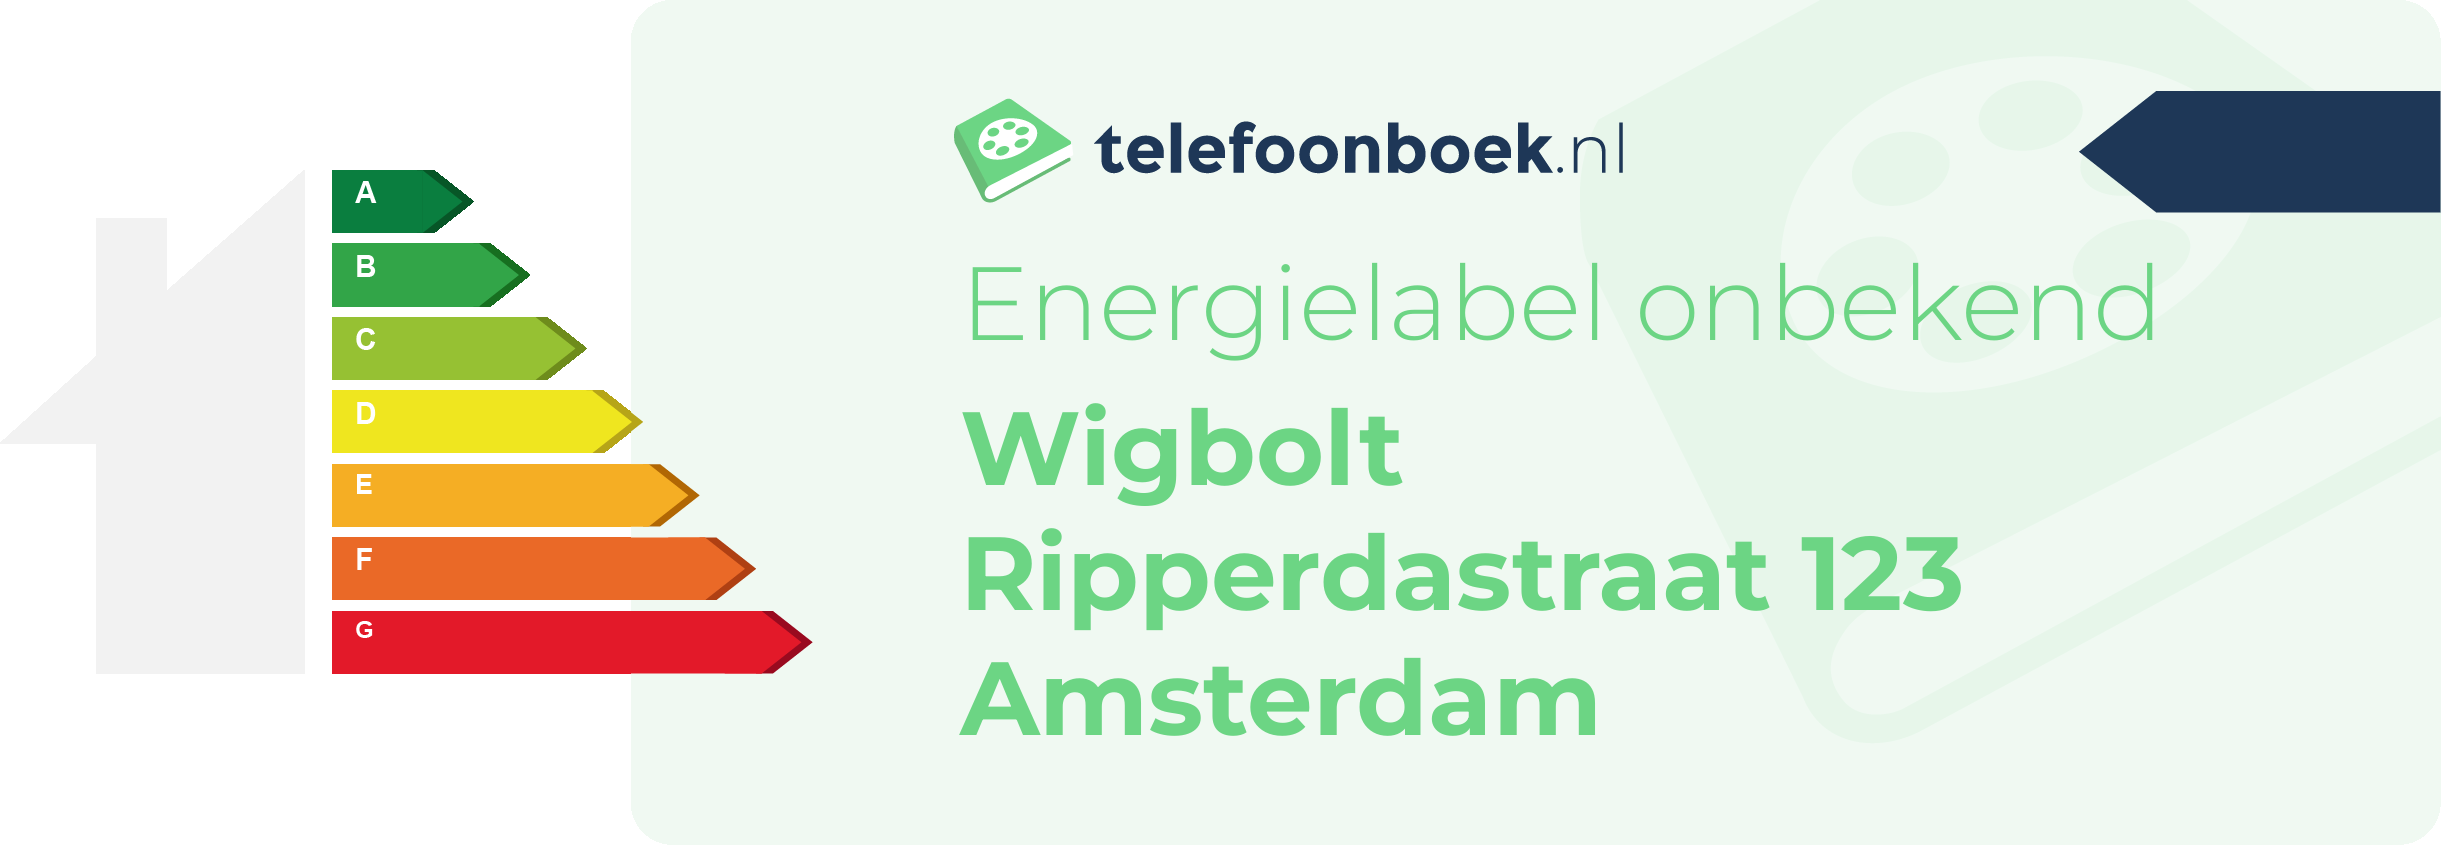 Energielabel Wigbolt Ripperdastraat 123 Amsterdam